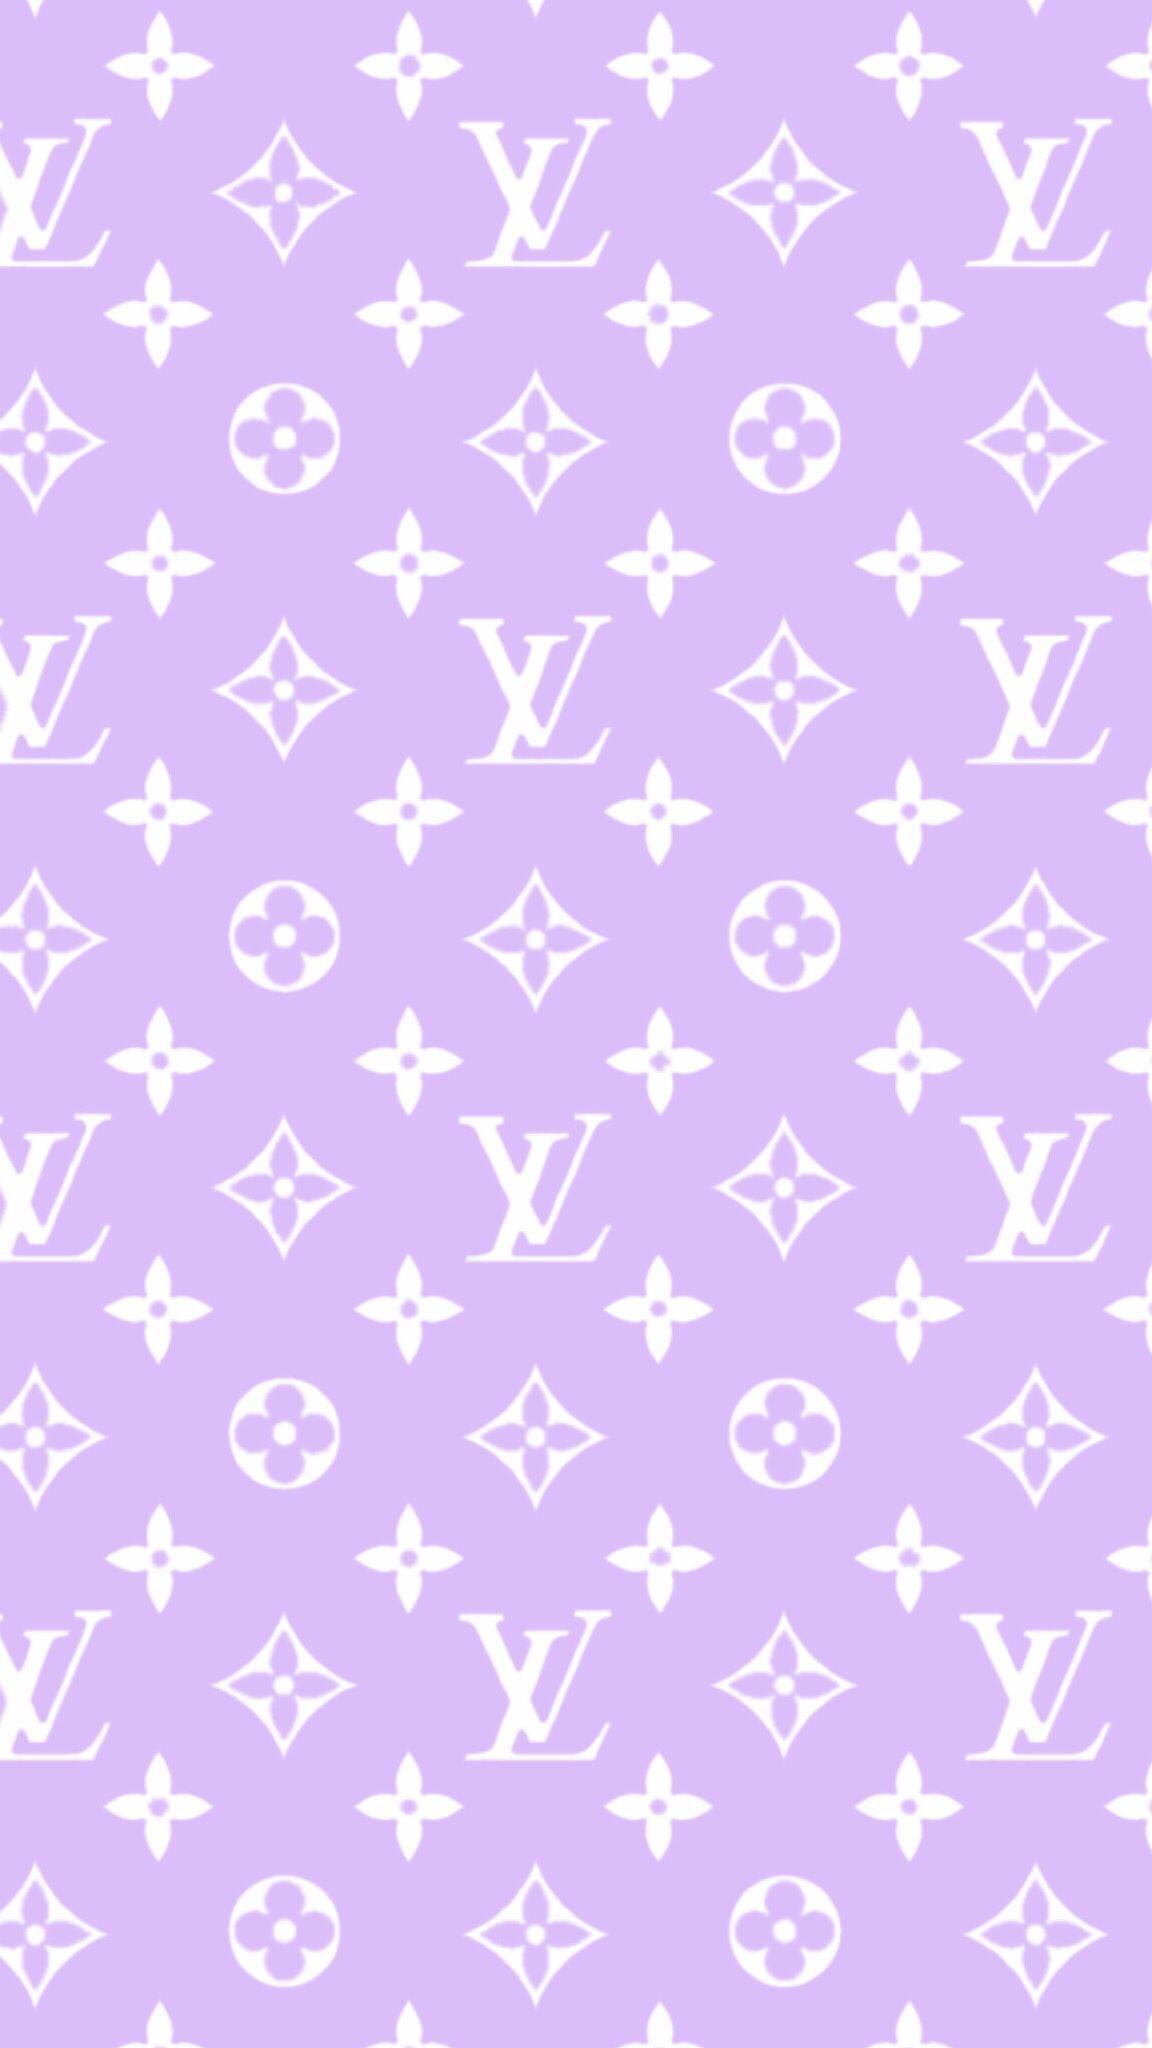 Louis vuitton pattern in purple - Lavender, VSCO, Louis Vuitton